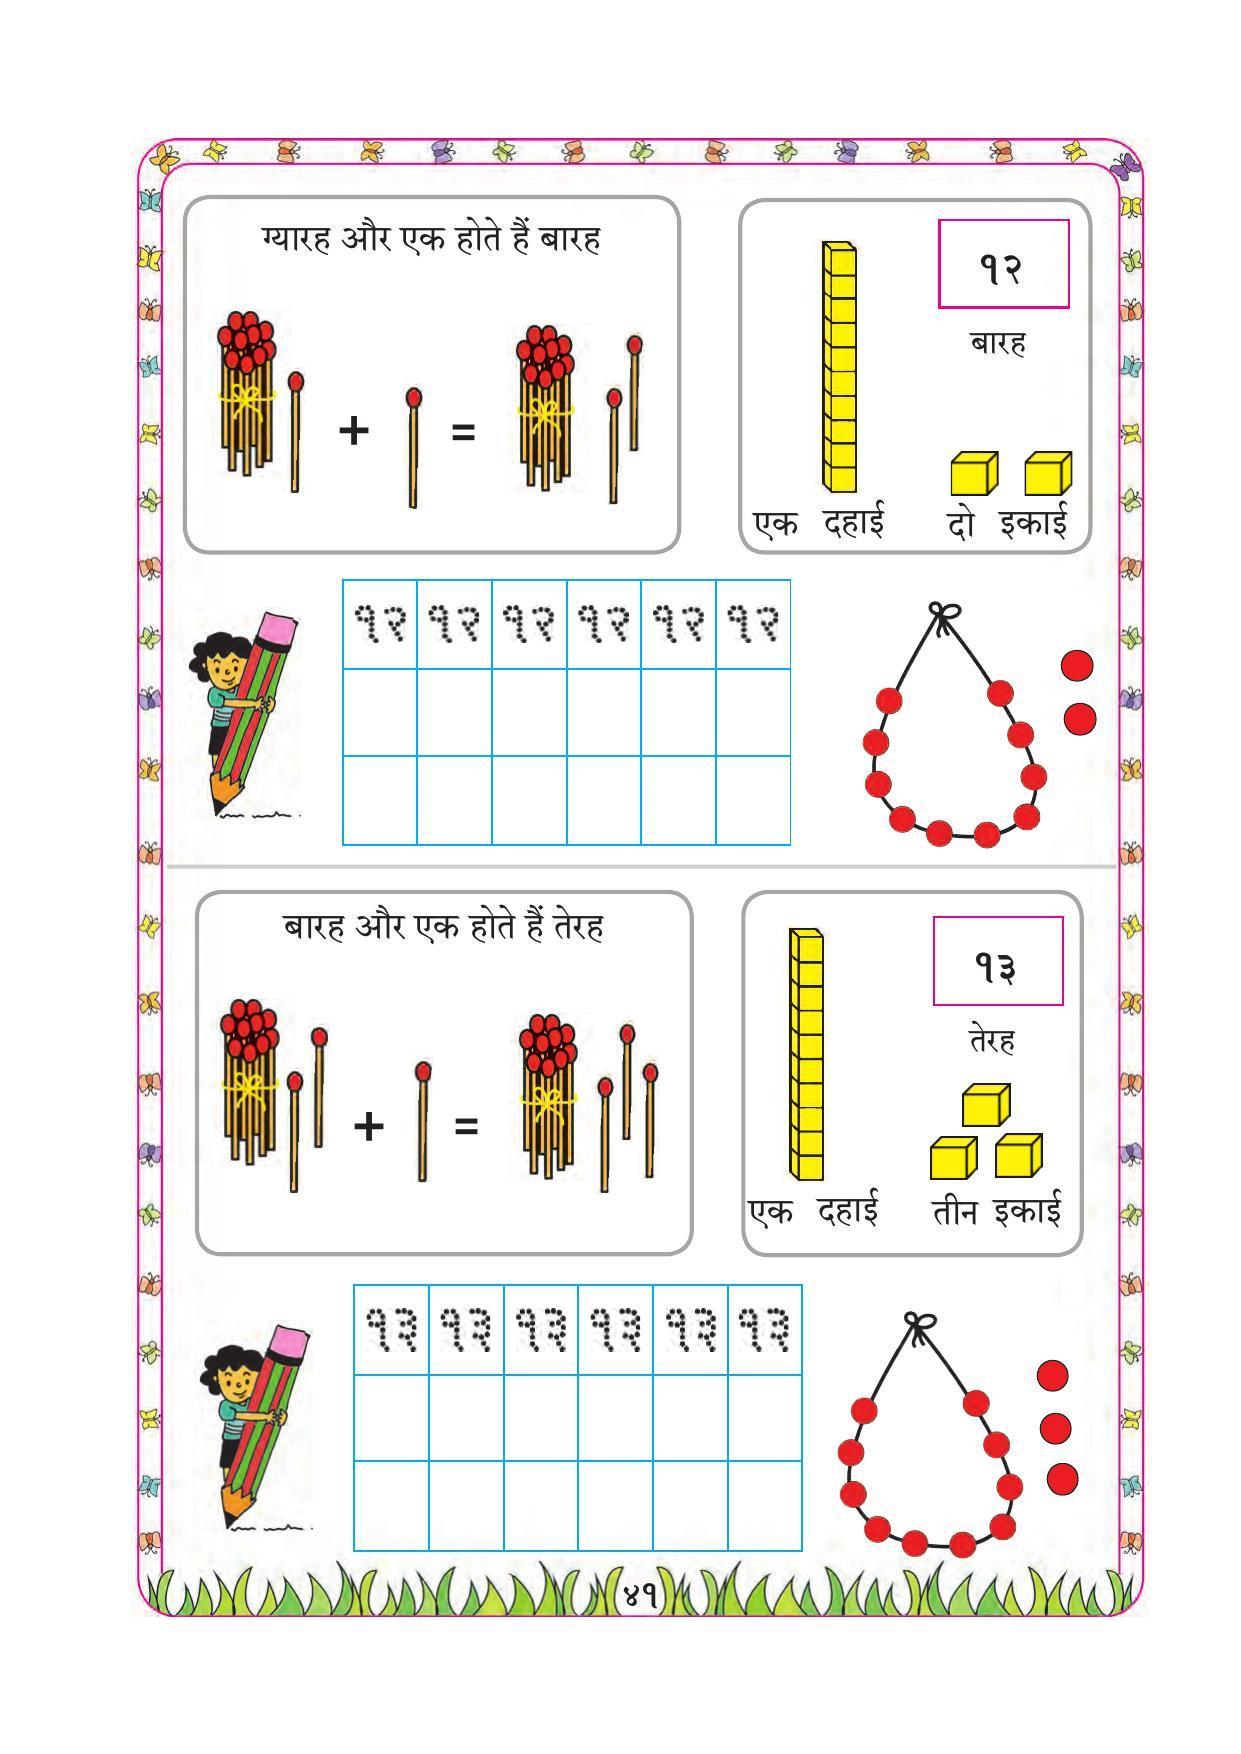 Maharashtra Board Class 1 Maths (Hindi Medium) Textbook - Page 51